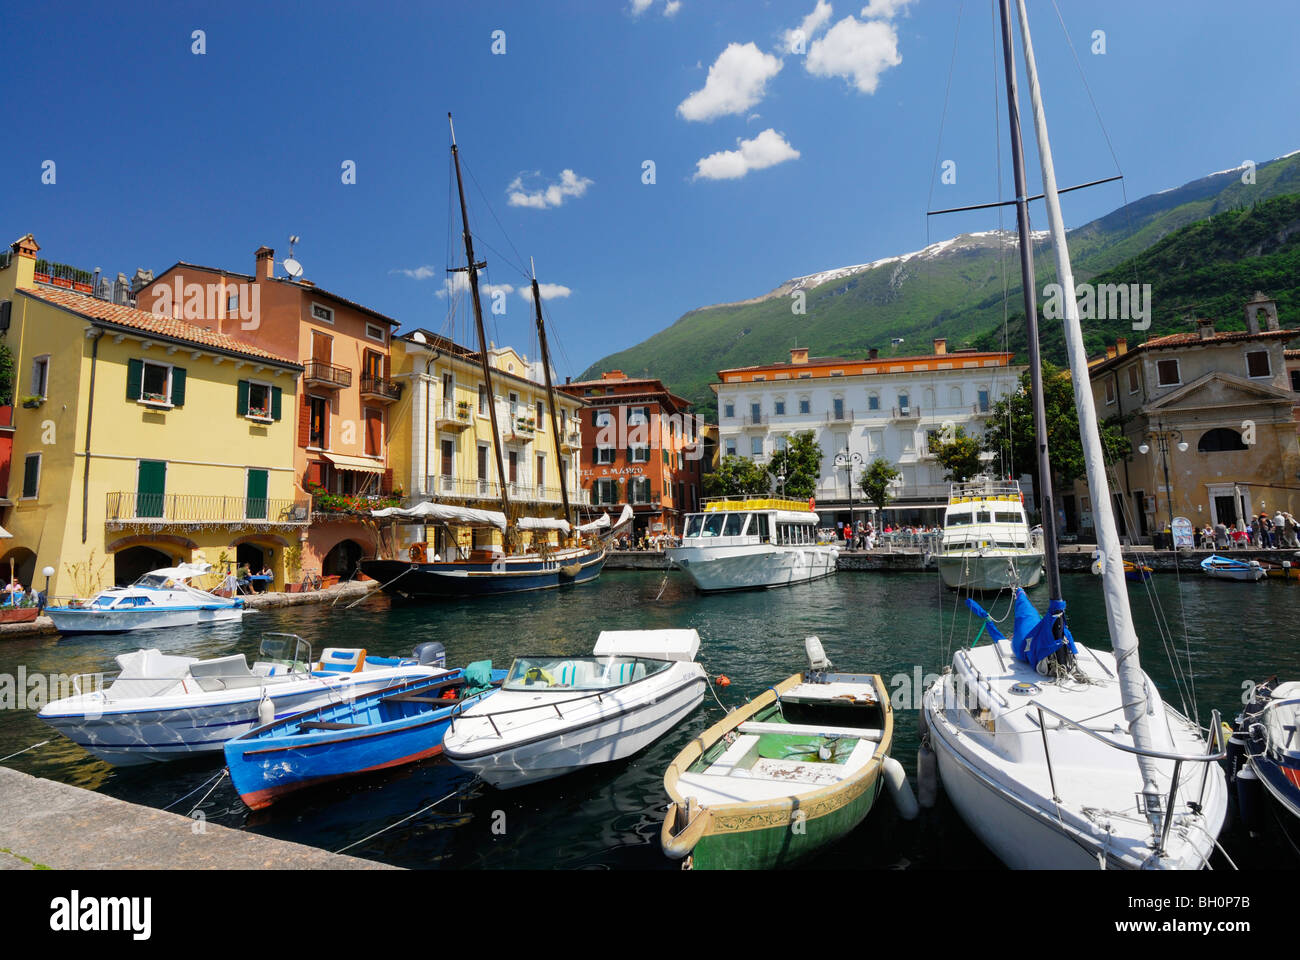 Marina with boats, Malcesine, Veneto, Italy Stock Photo